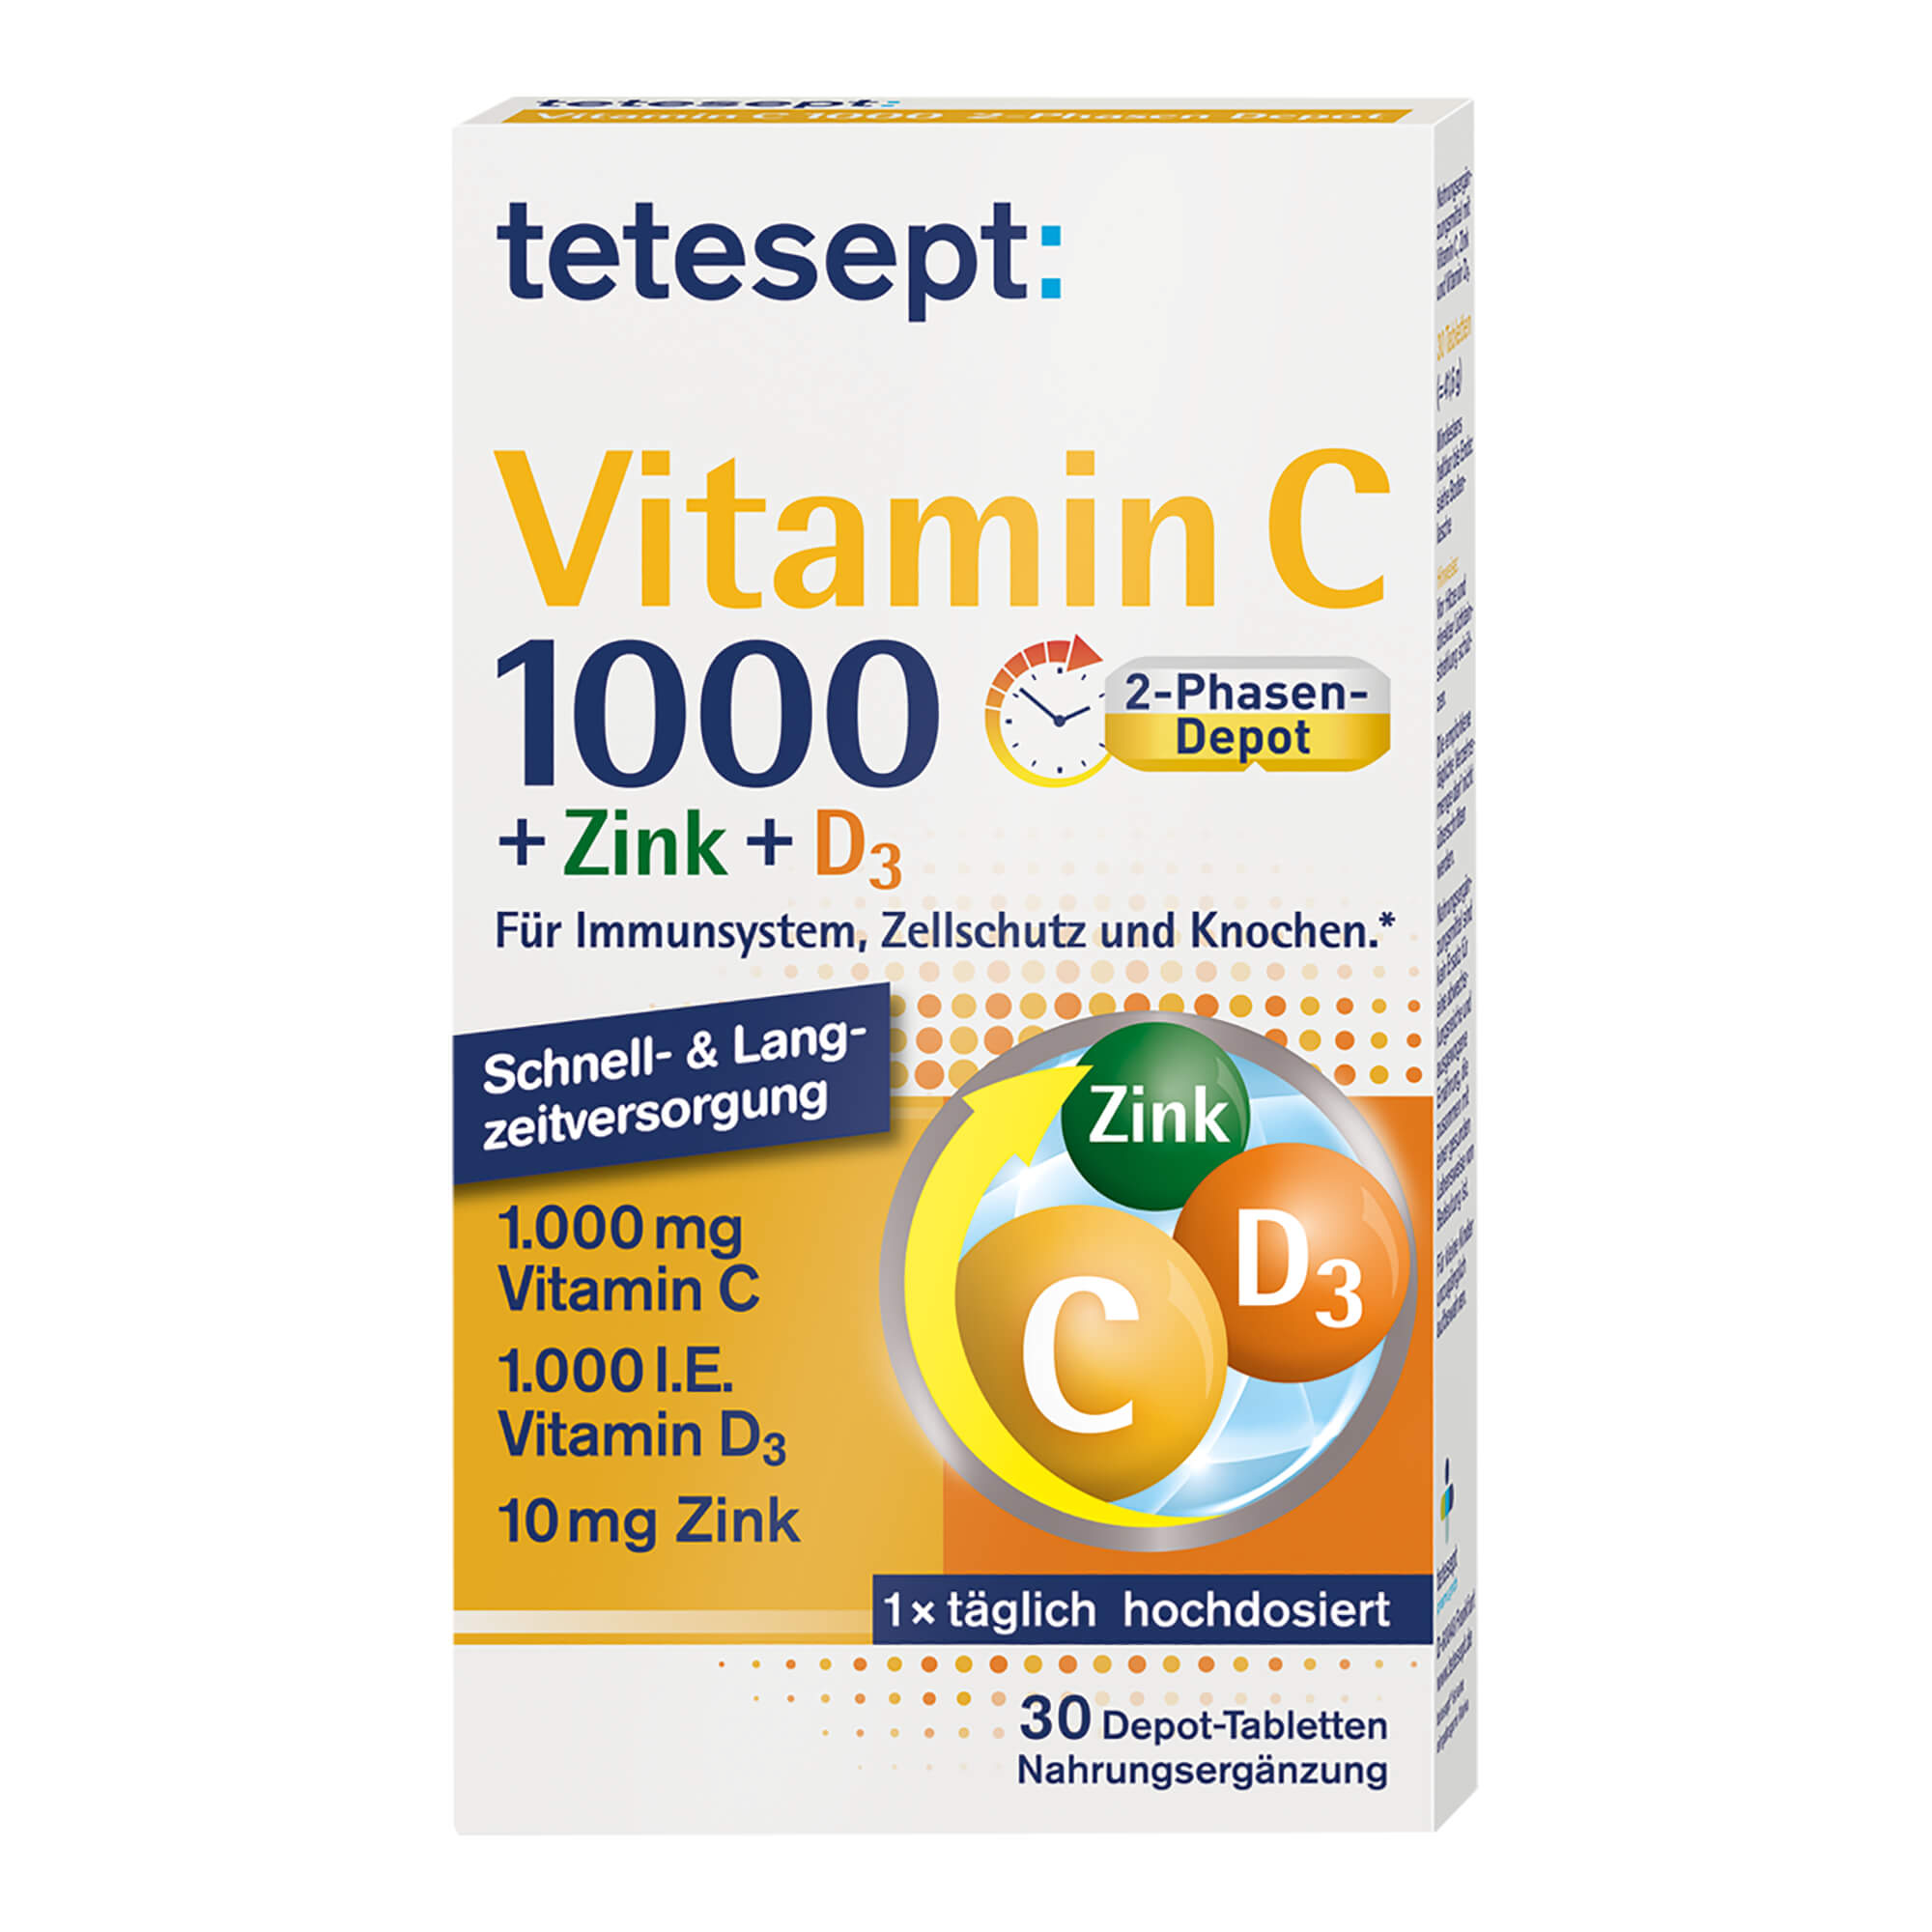 Mit hochdosiertem Vitamin C, D3 und Zink zur Unterstützung des Immunsystems.